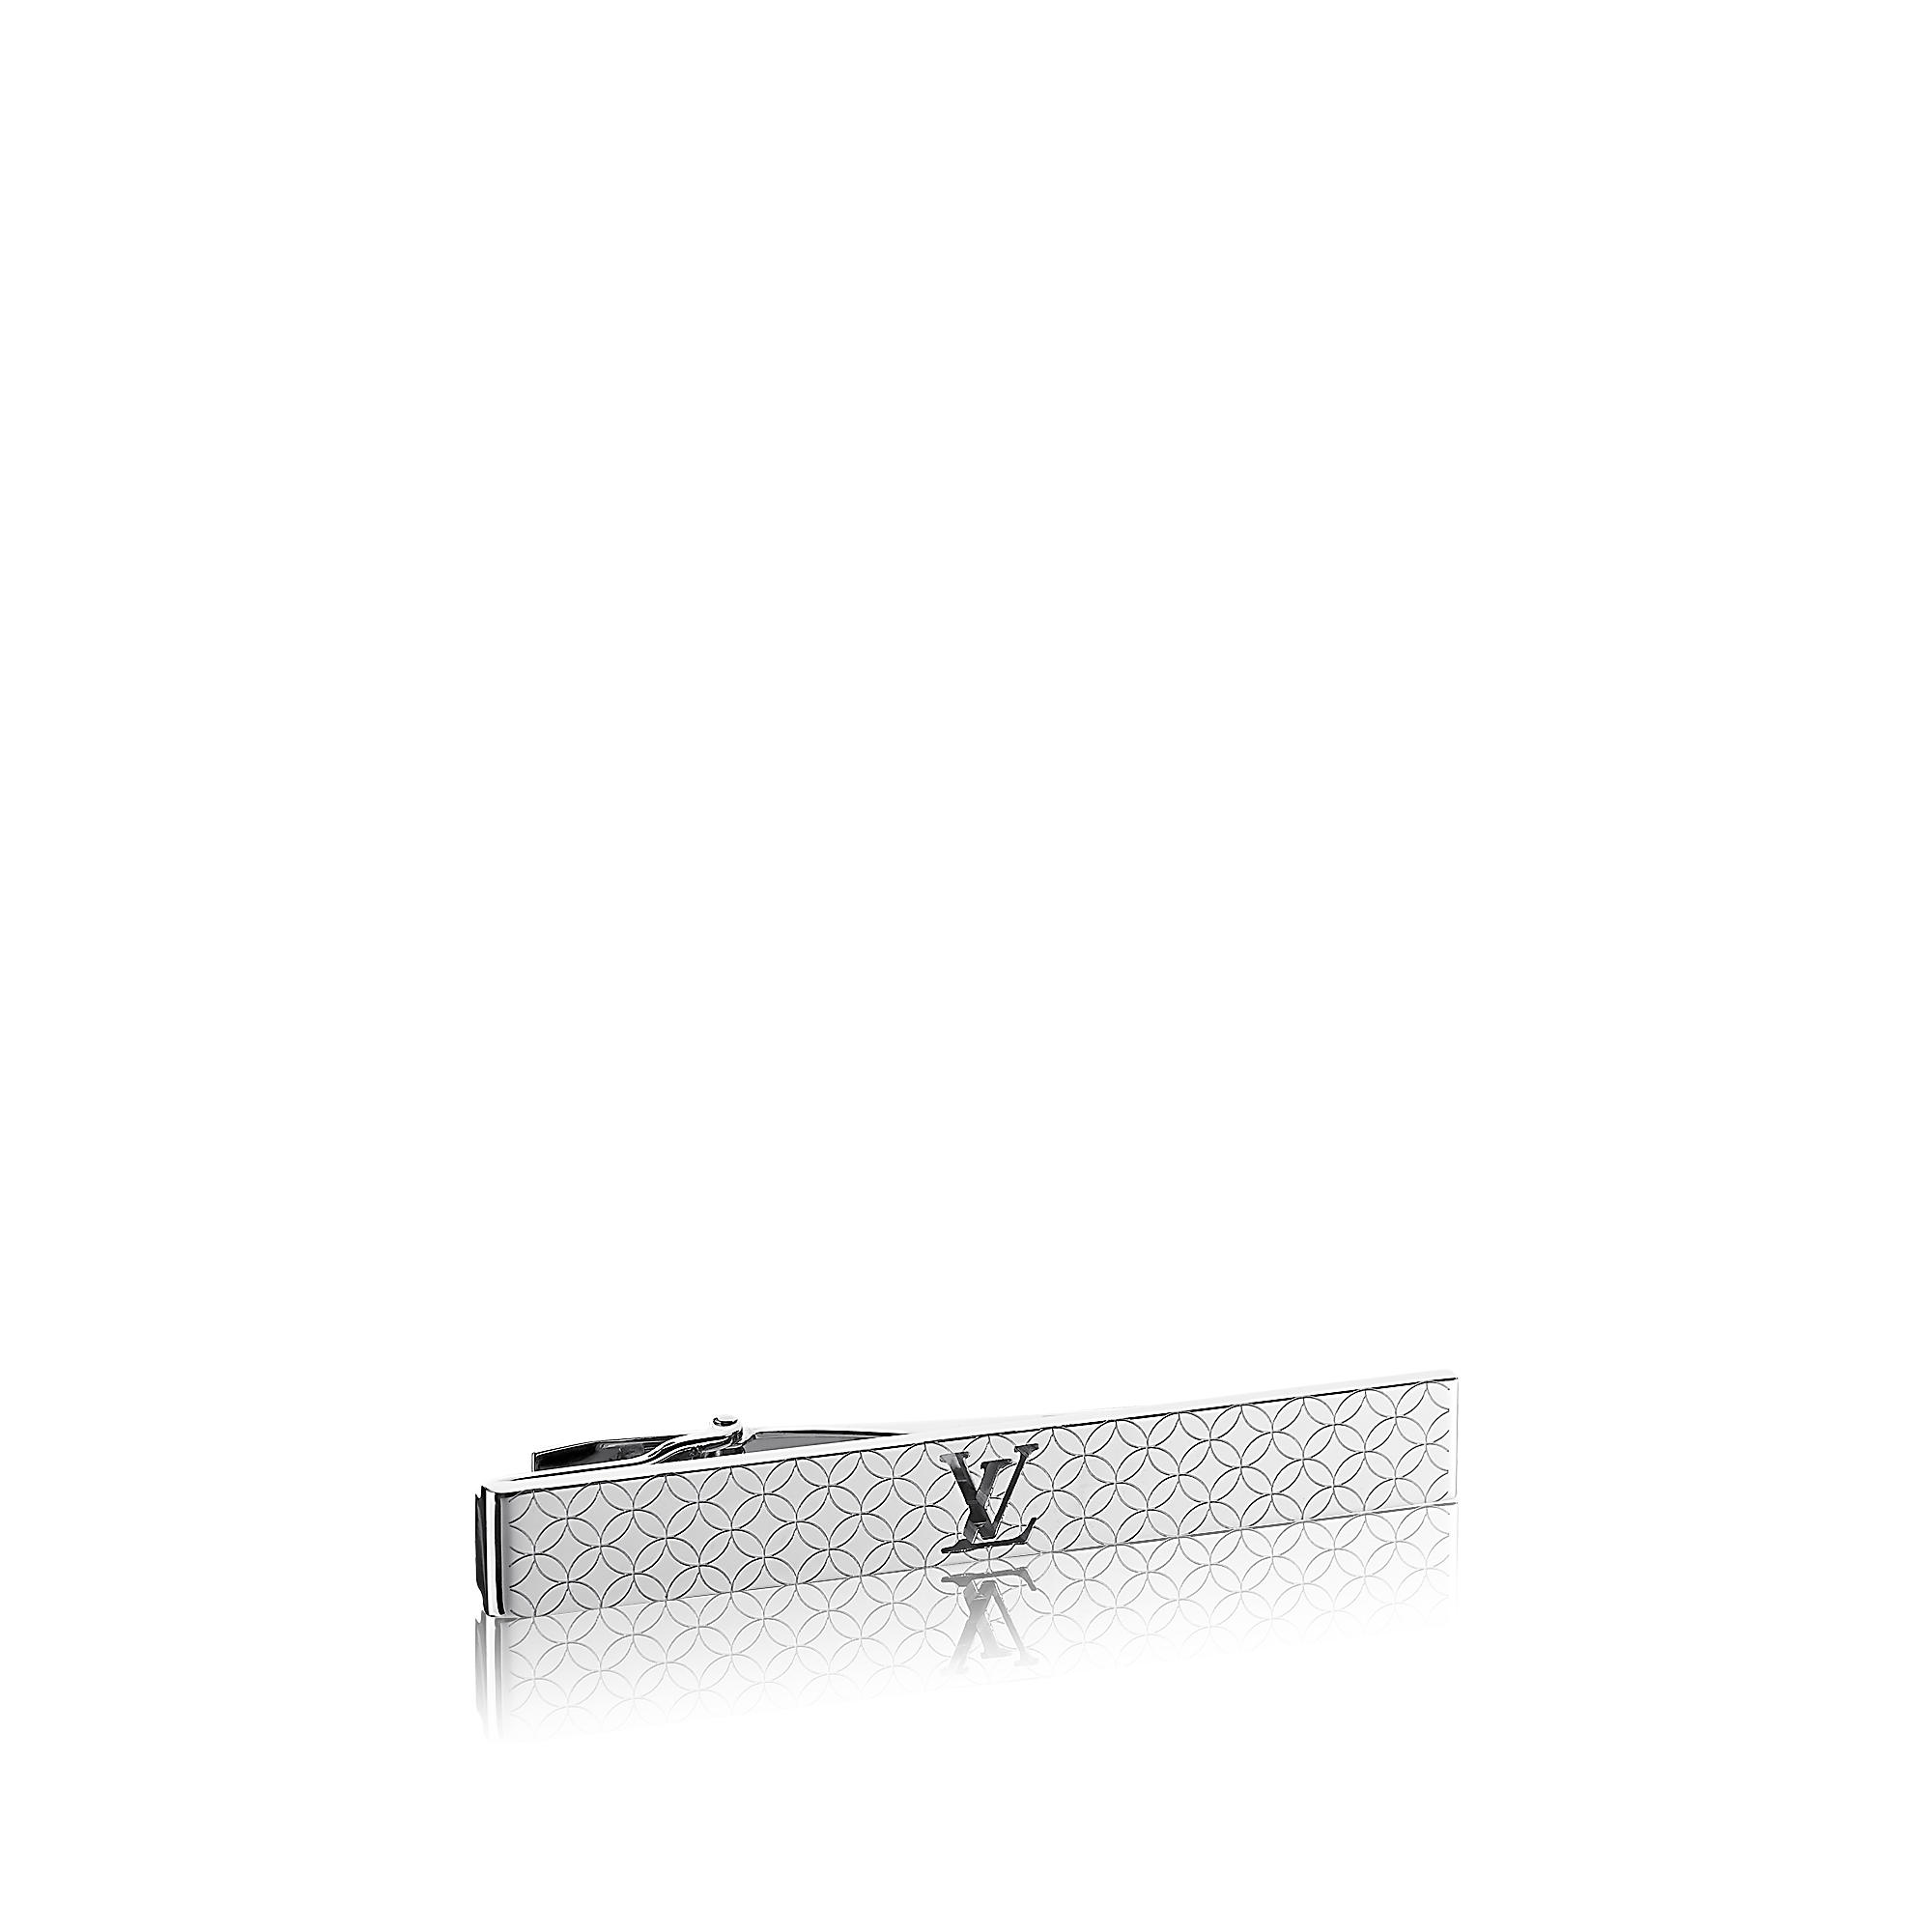 Authentic Louis Vuitton Tie Pin M61976 Tie Clip Damier Tyber